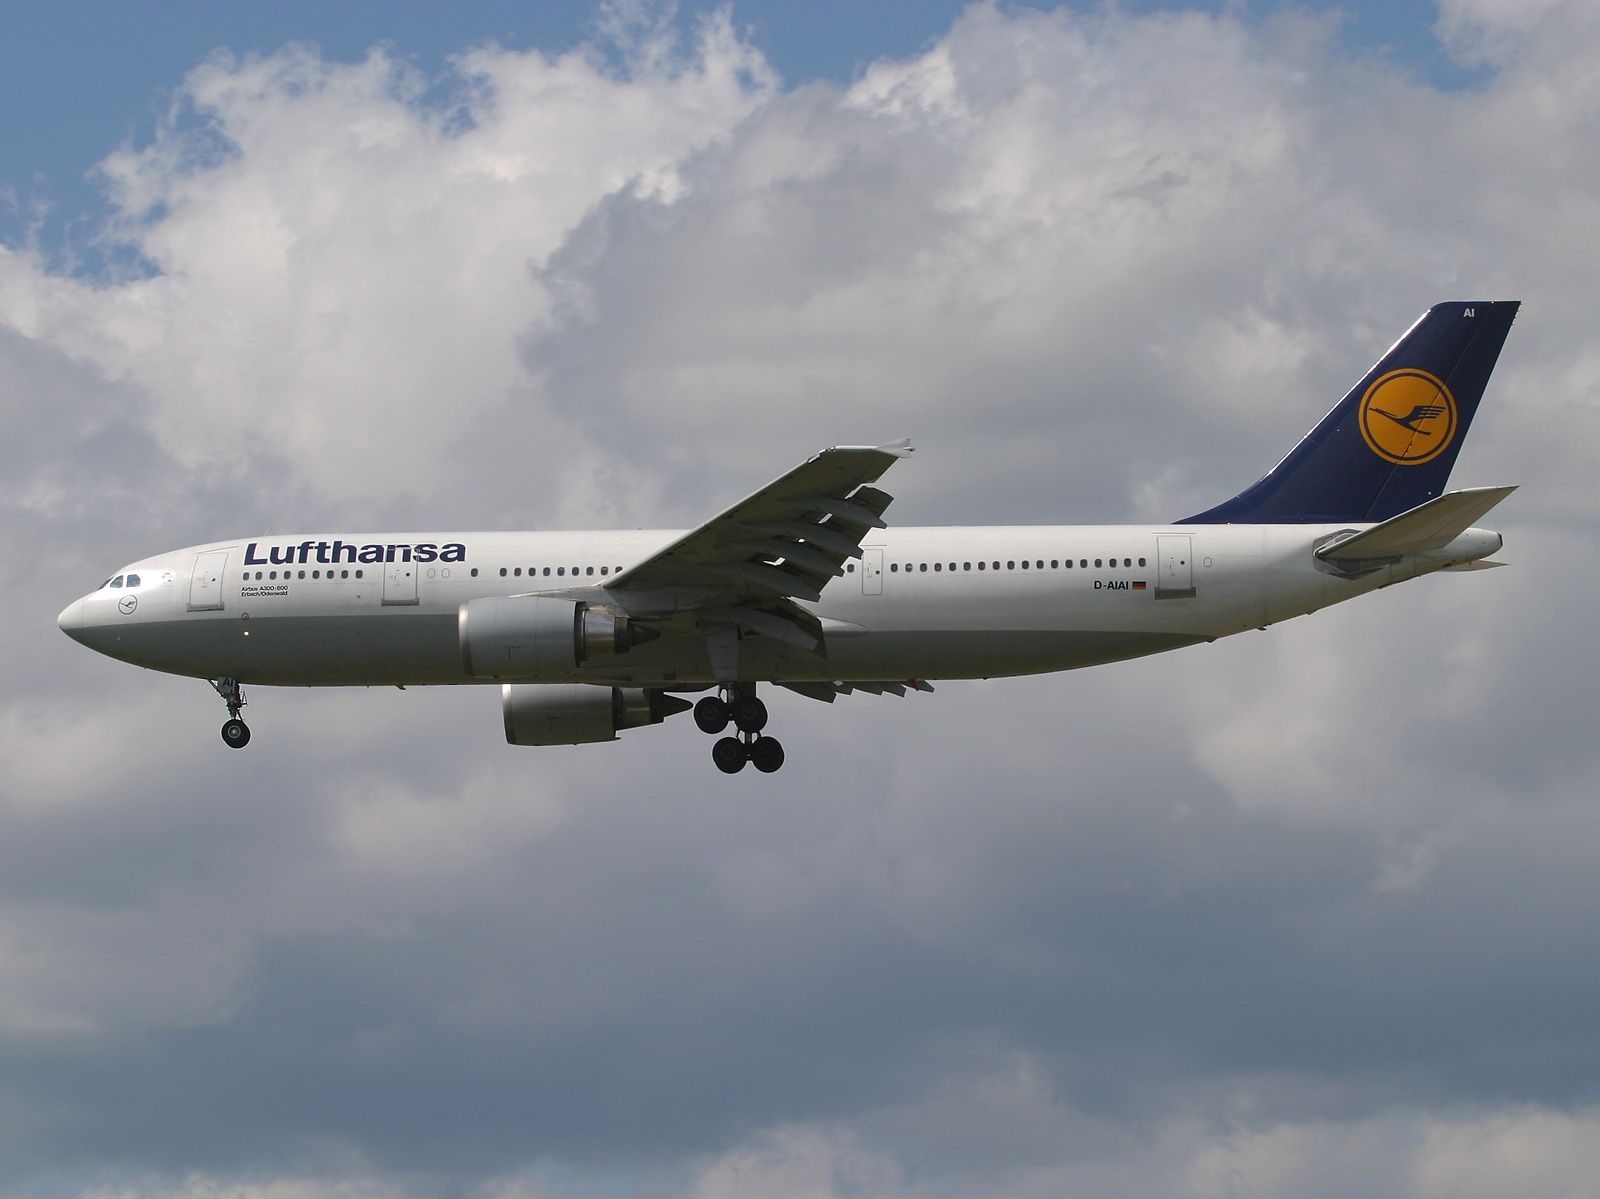 Airbus_A300B4-603 Lufthansa Raimund Stehmann via Wikimedia Commons